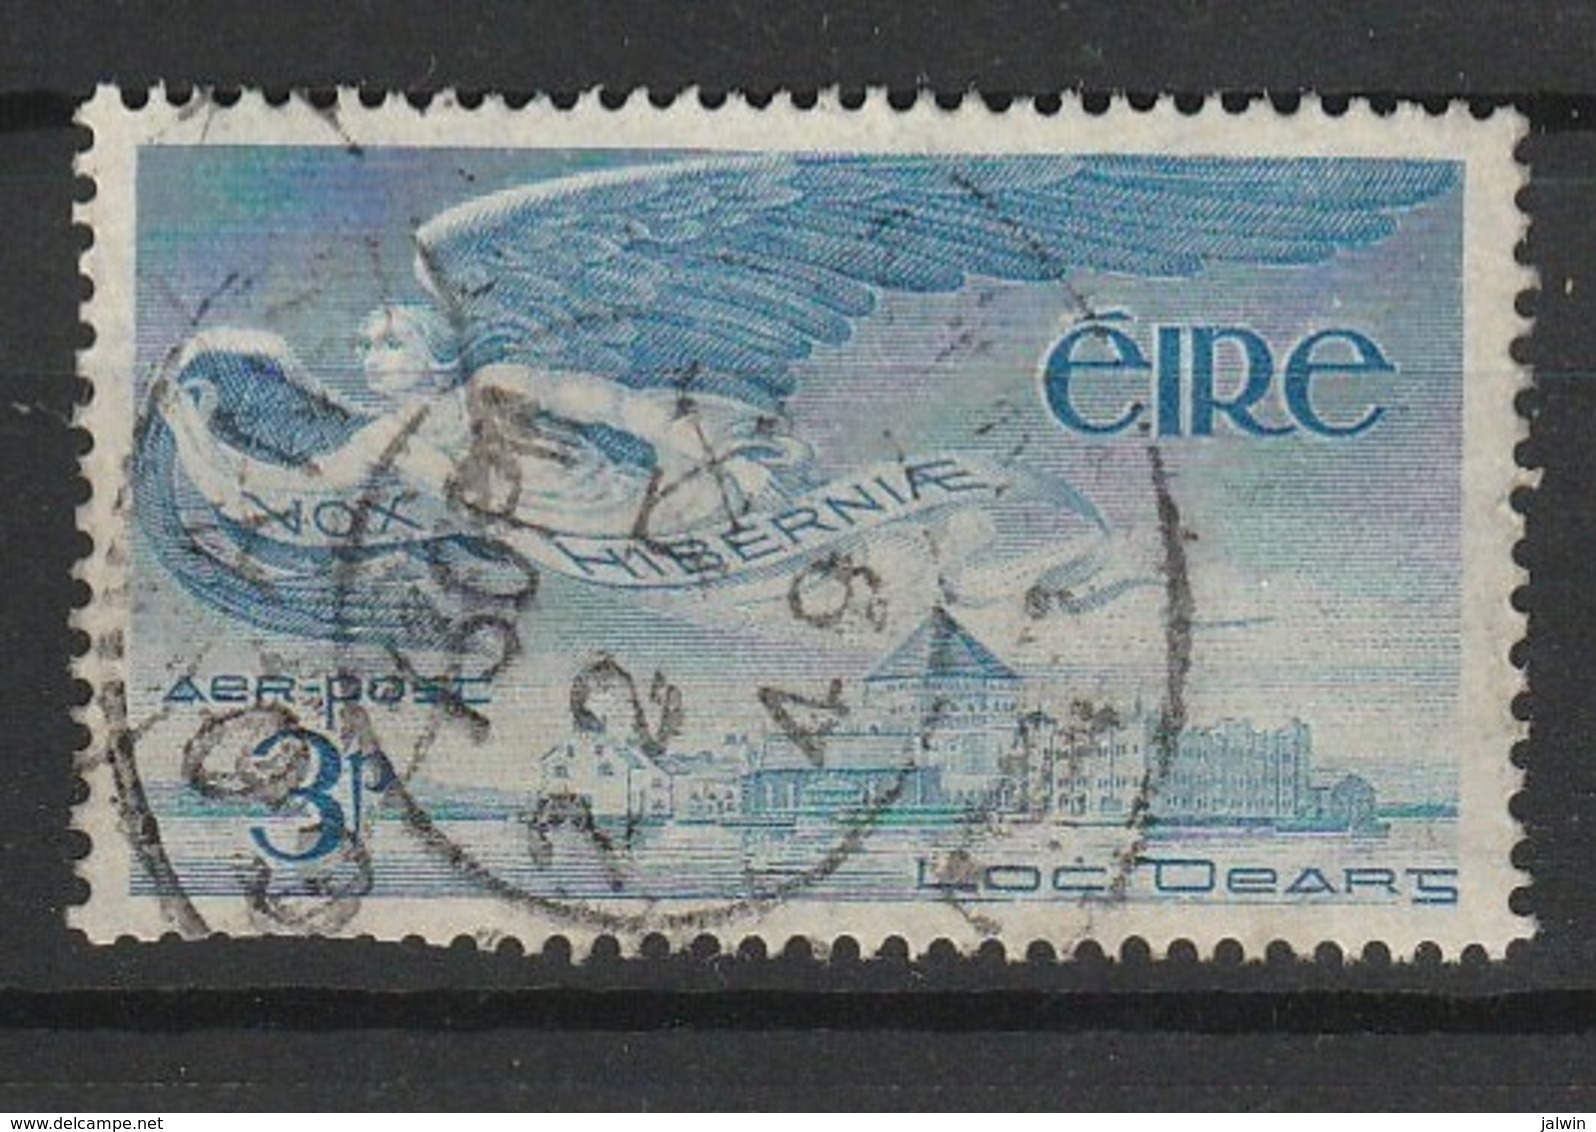 IRLANDE POSTE AERIENNE 1948-65 YT N° 2 Obl. - Poste Aérienne